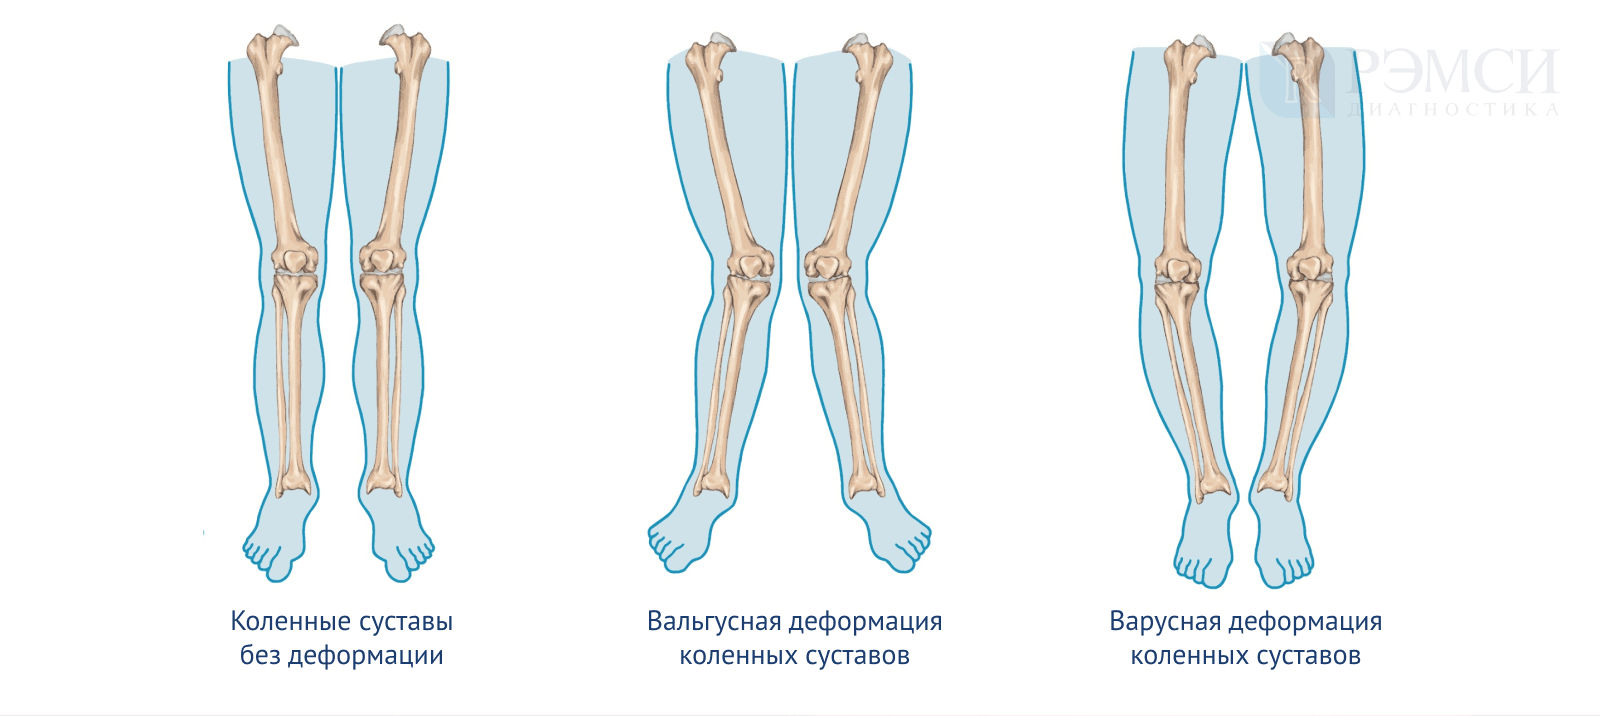 Варусная деформация оси нижних конечностей. Х-образная деформация нижней конечности вальгусная. Вальгусная и варусная деформация ног. Варусная деформация коленных суставов.